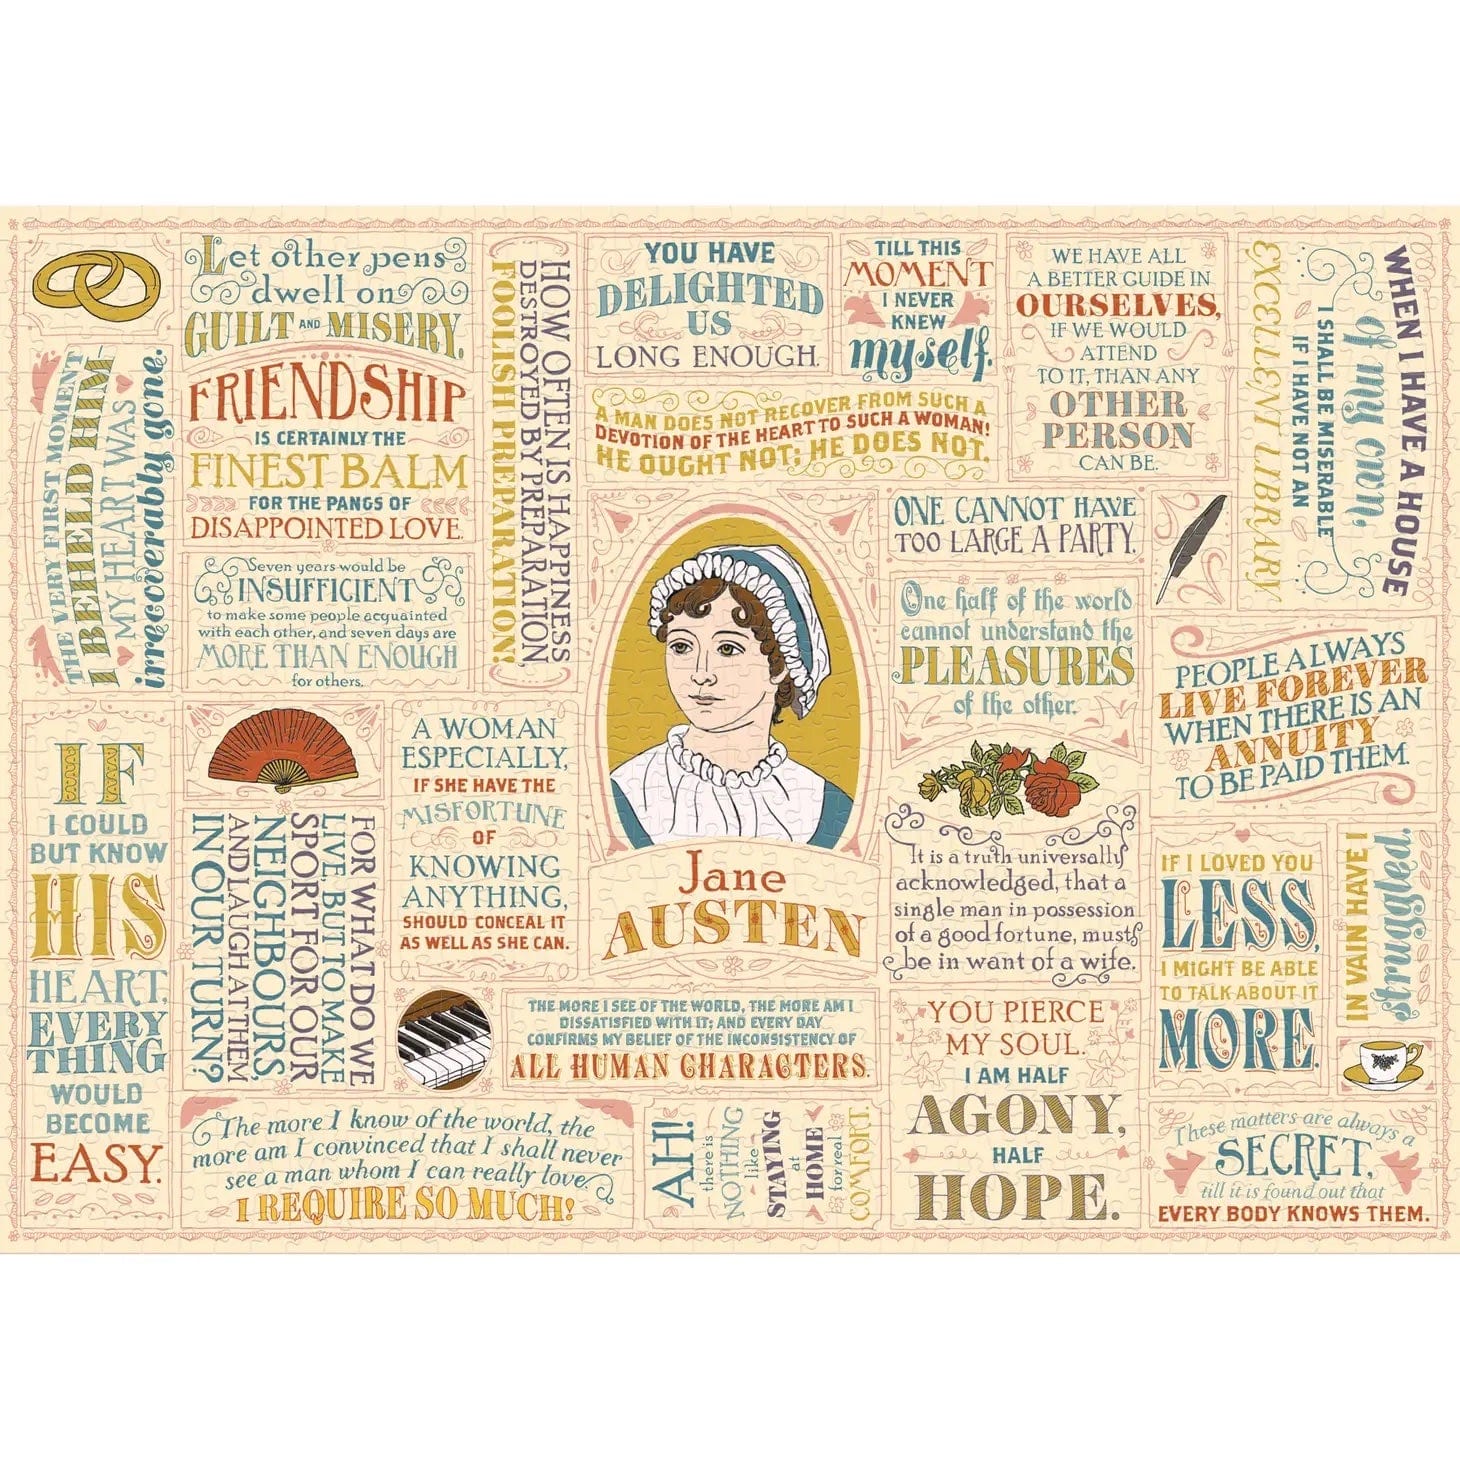 Jane Austen Literary Lines Puzzle BookGeek